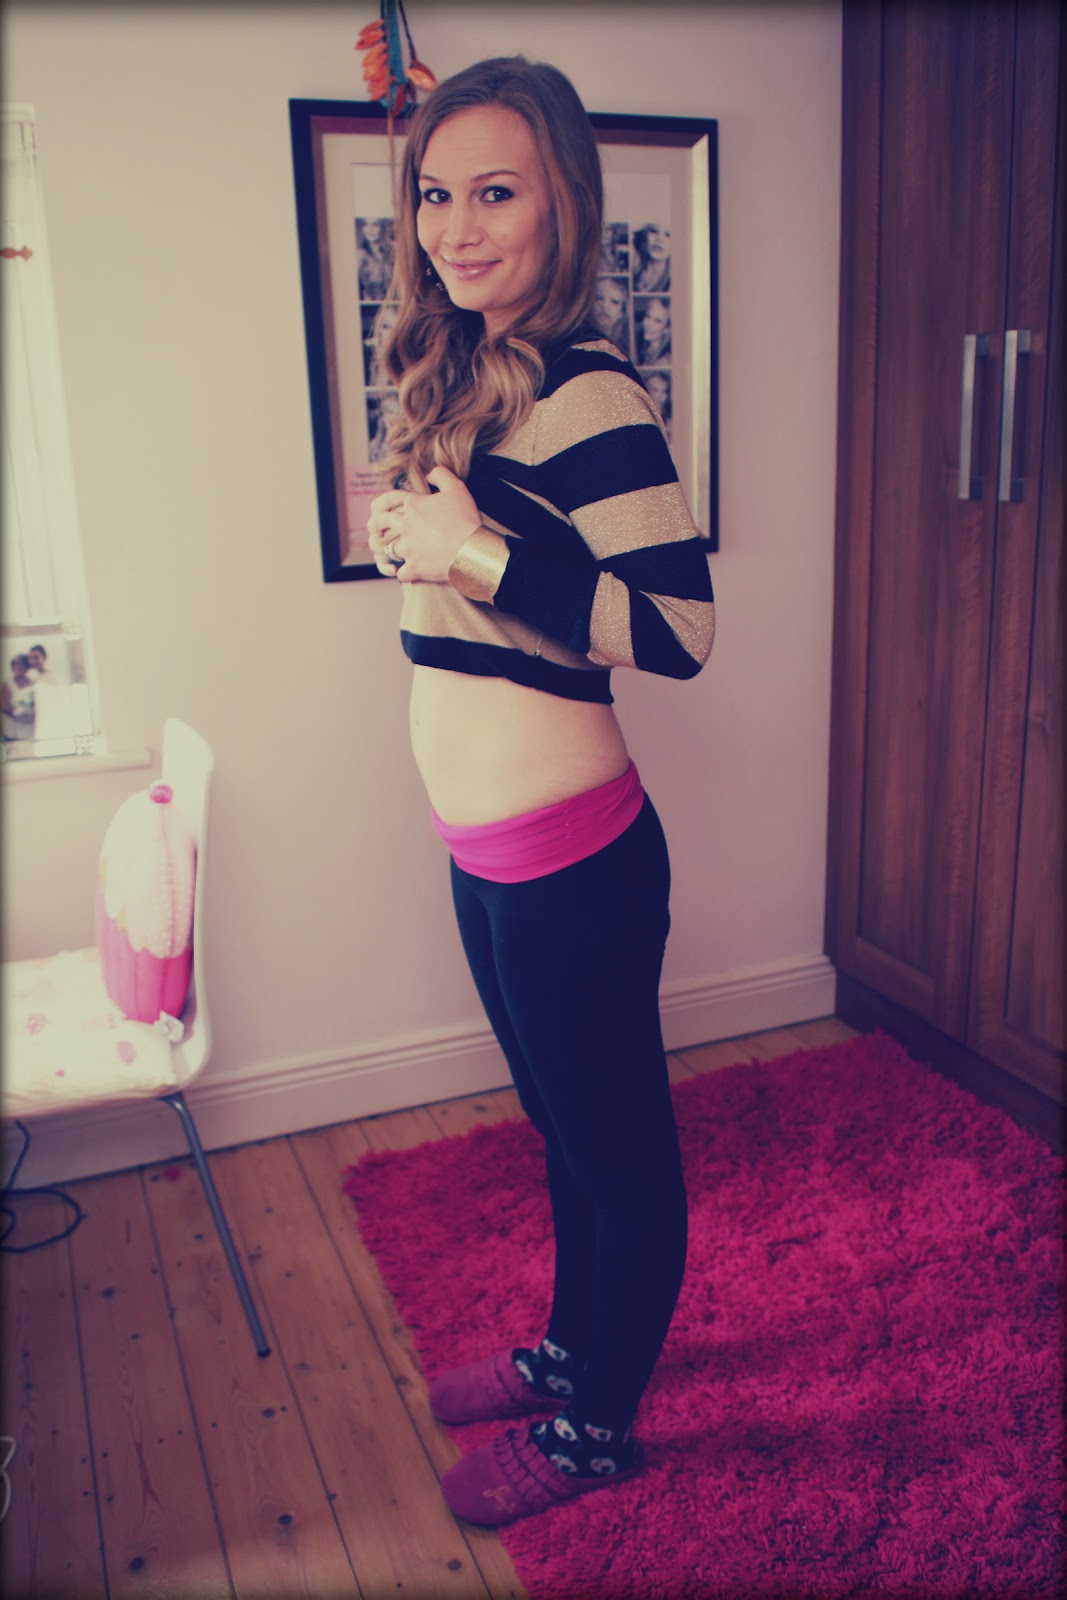 http://3.bp.blogspot.com/-tkGmXX1uzWU/T2dH2njrk1I/AAAAAAAAJhU/soiz0GWJ_uE/s1600/Anna-Saccone-16-Weeks-Pregnant-1.jpg